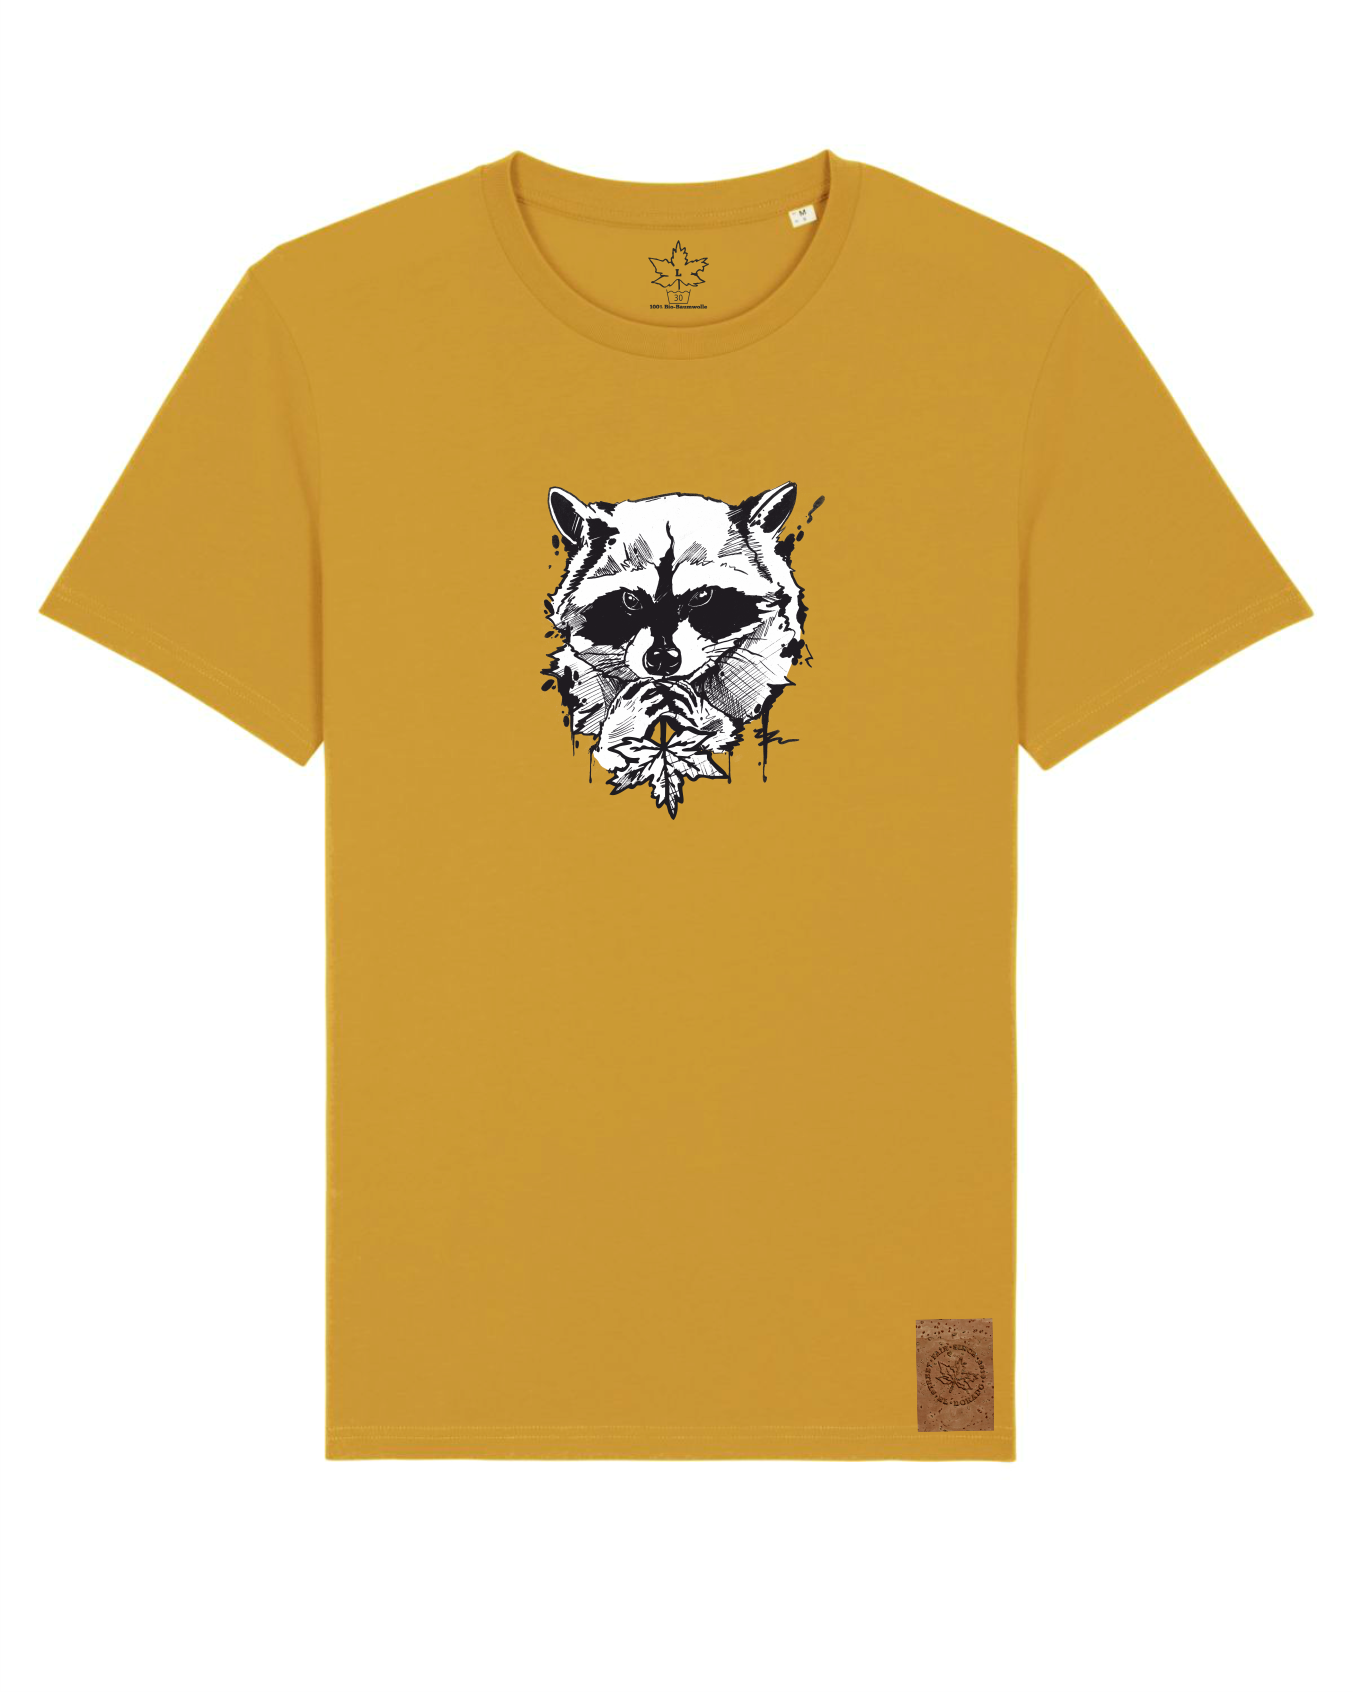 Natural Gangsta - Bio Herren/Unisex Shirt